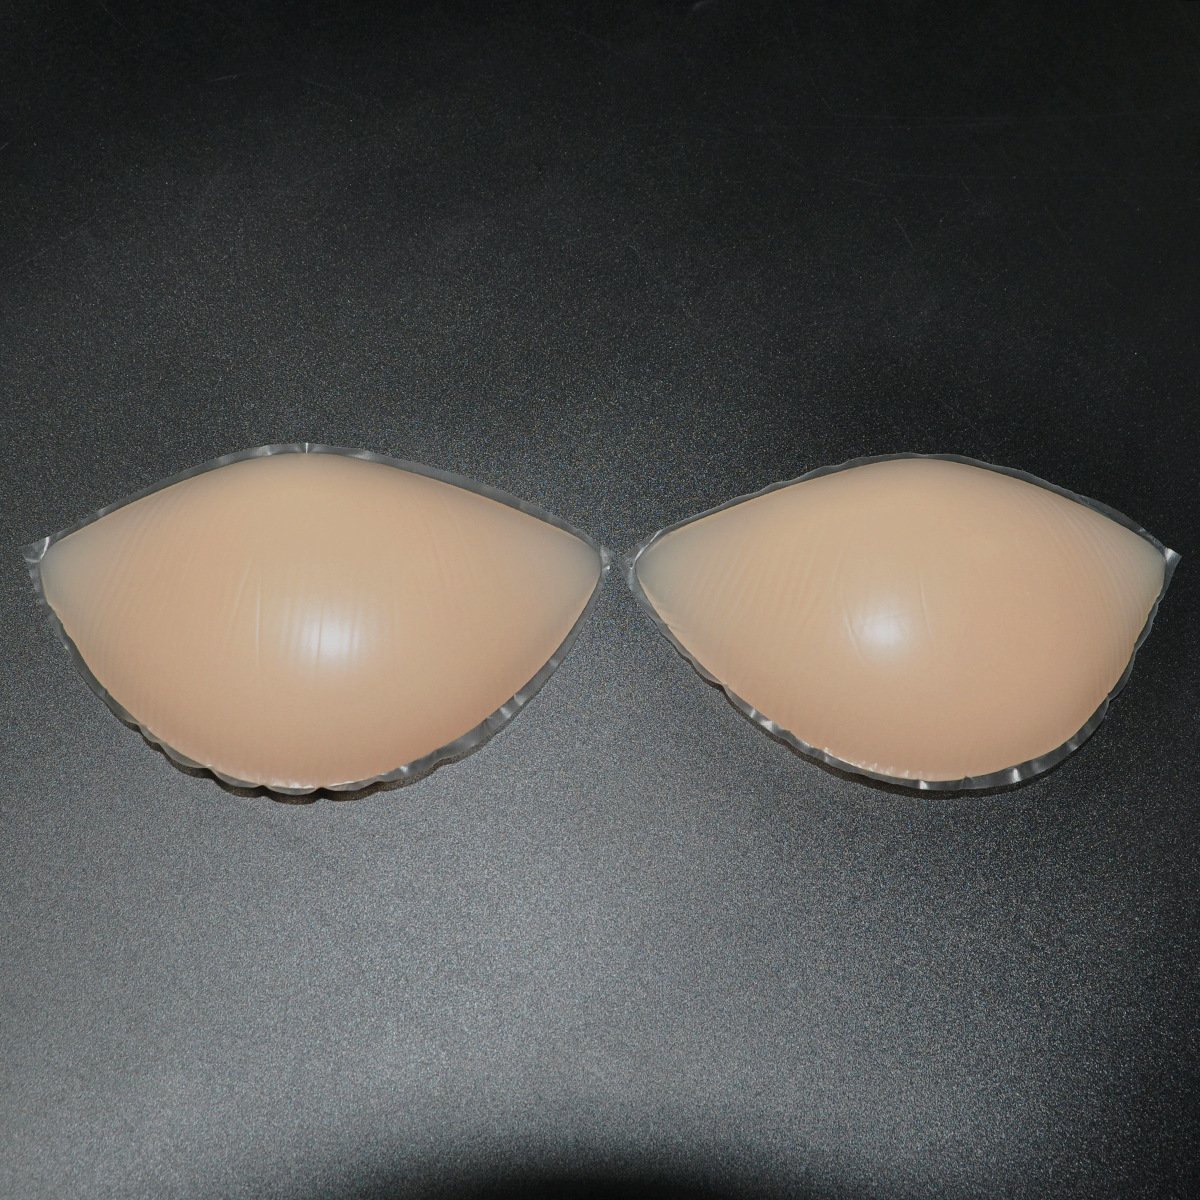 男用cd连体变装义乳 增大罩杯假乳房 水滴型伪娘假乳假胸硅胶义乳-阿里巴巴